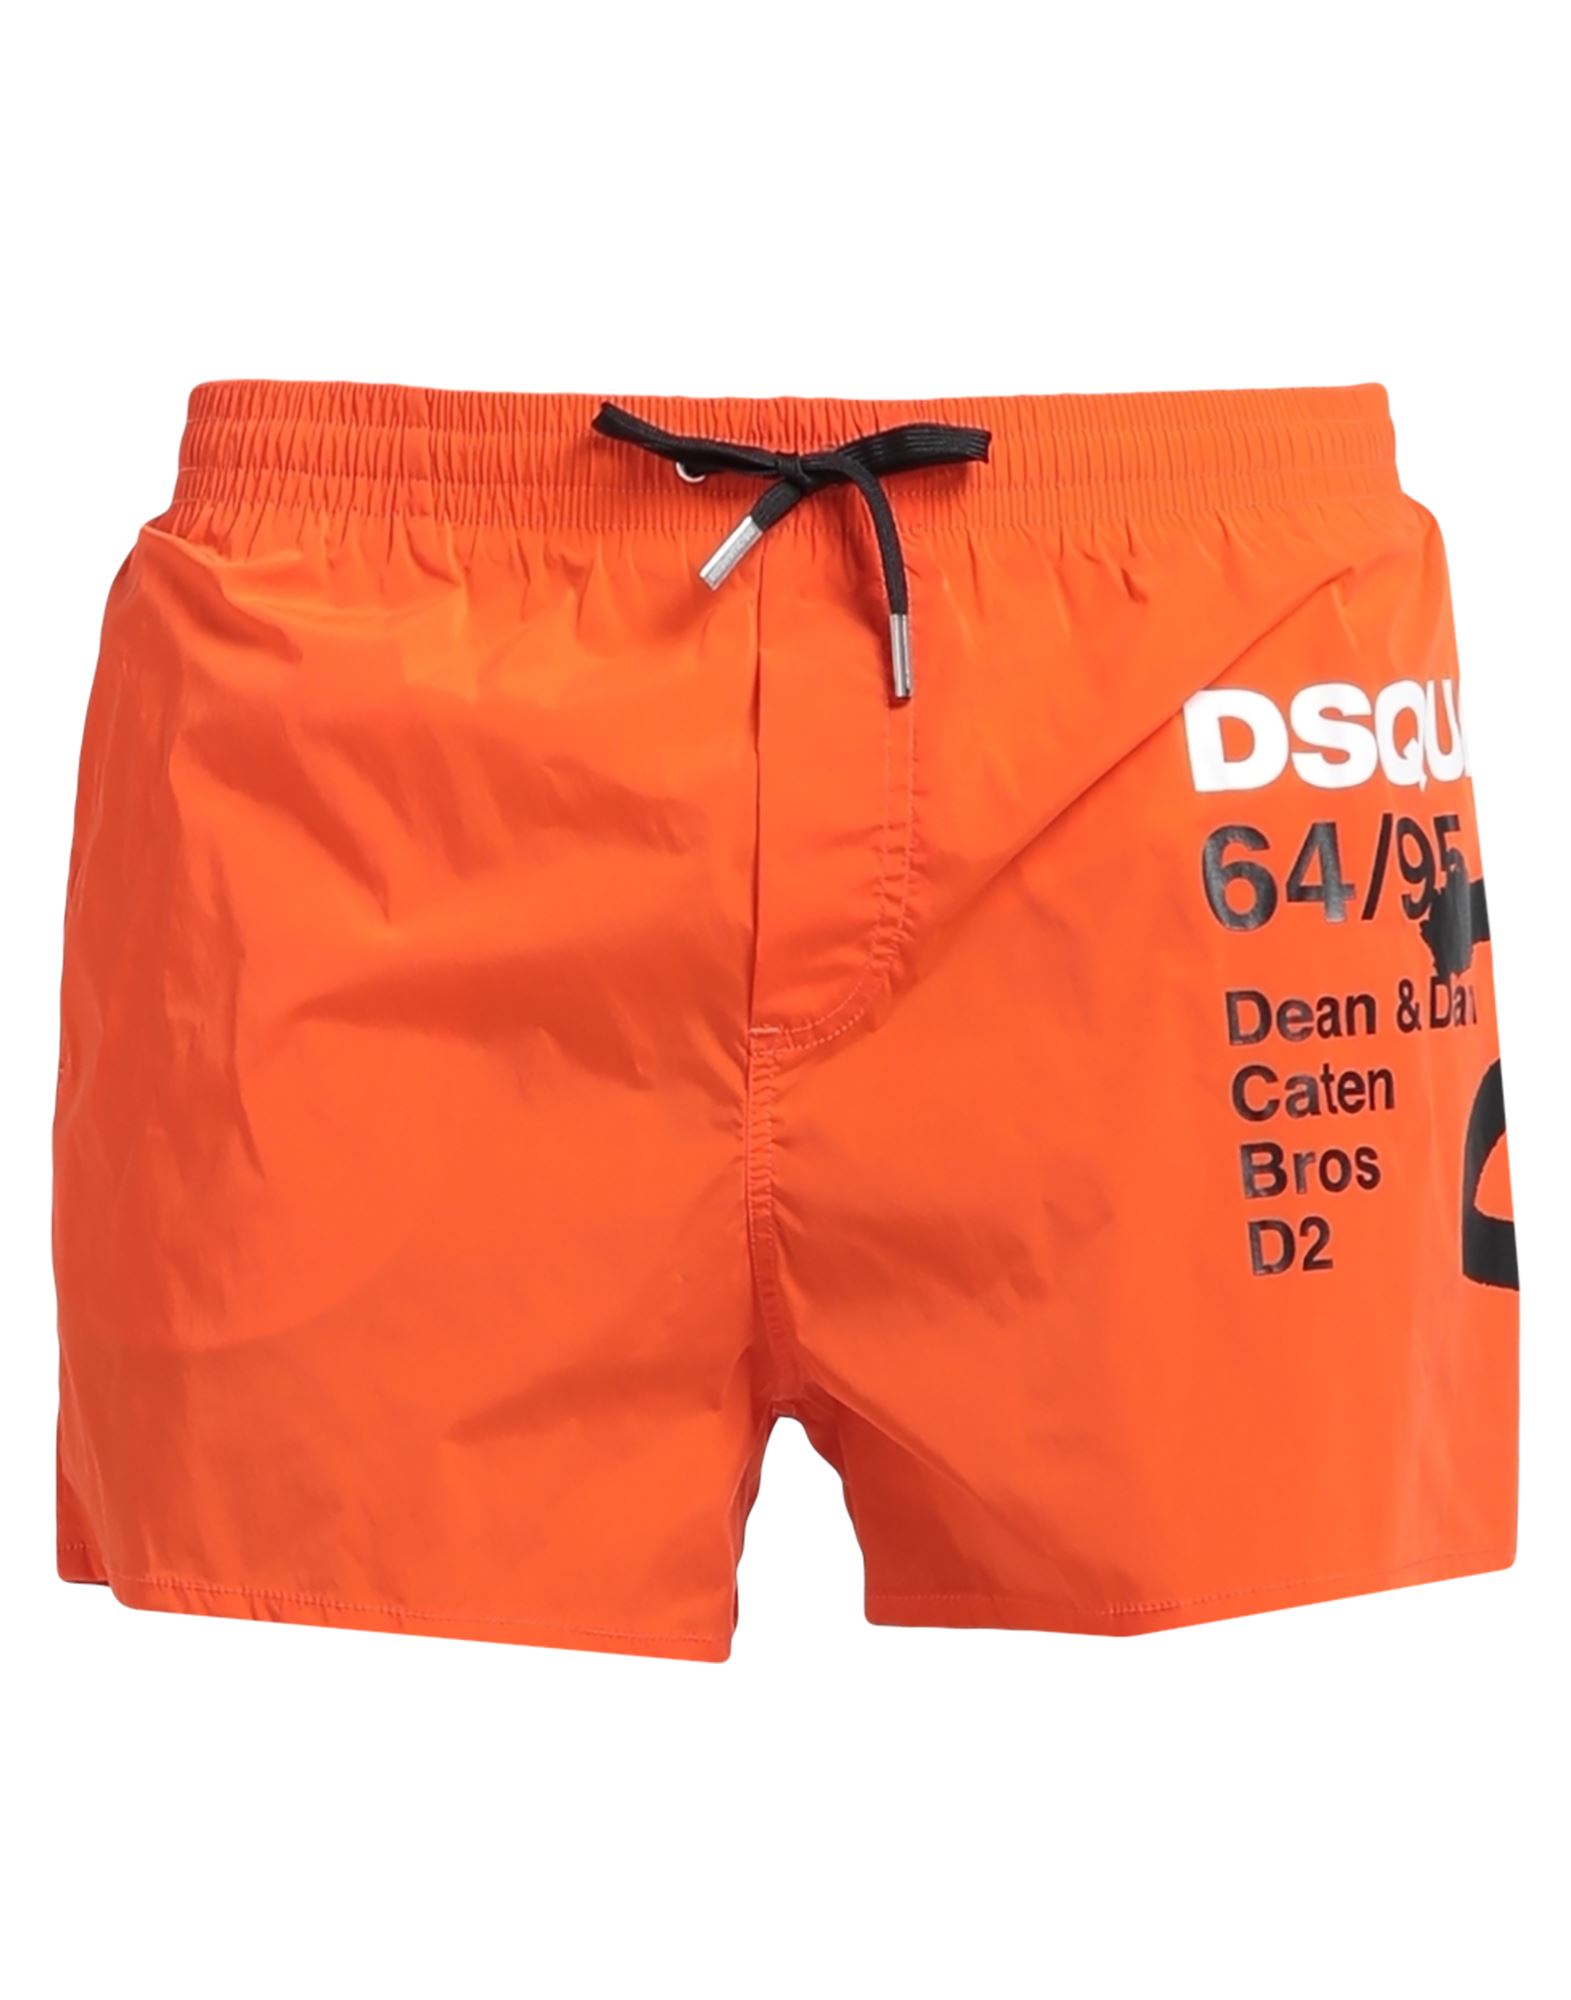 Dsquared2 Swim Trunks In Orange